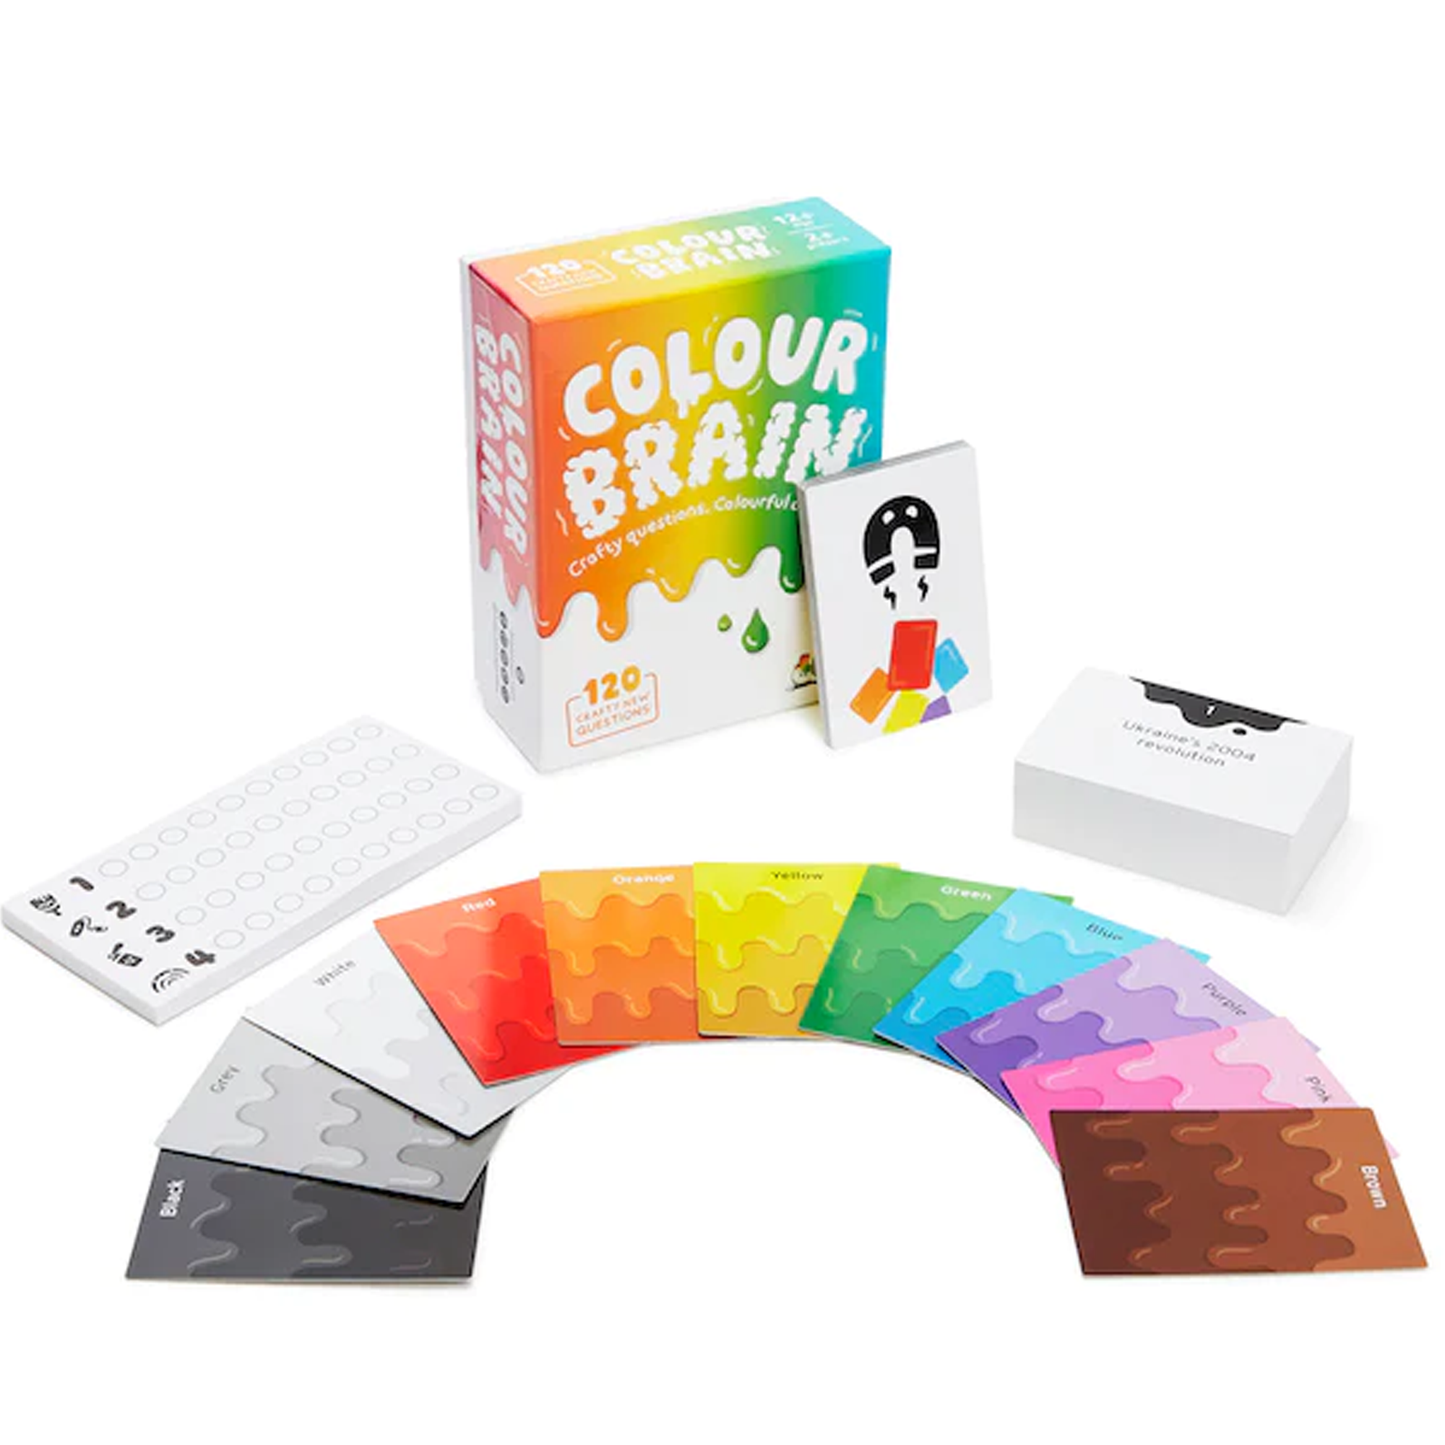 Colour Brain Mini Card Game Box and Contents | Happy Piranha